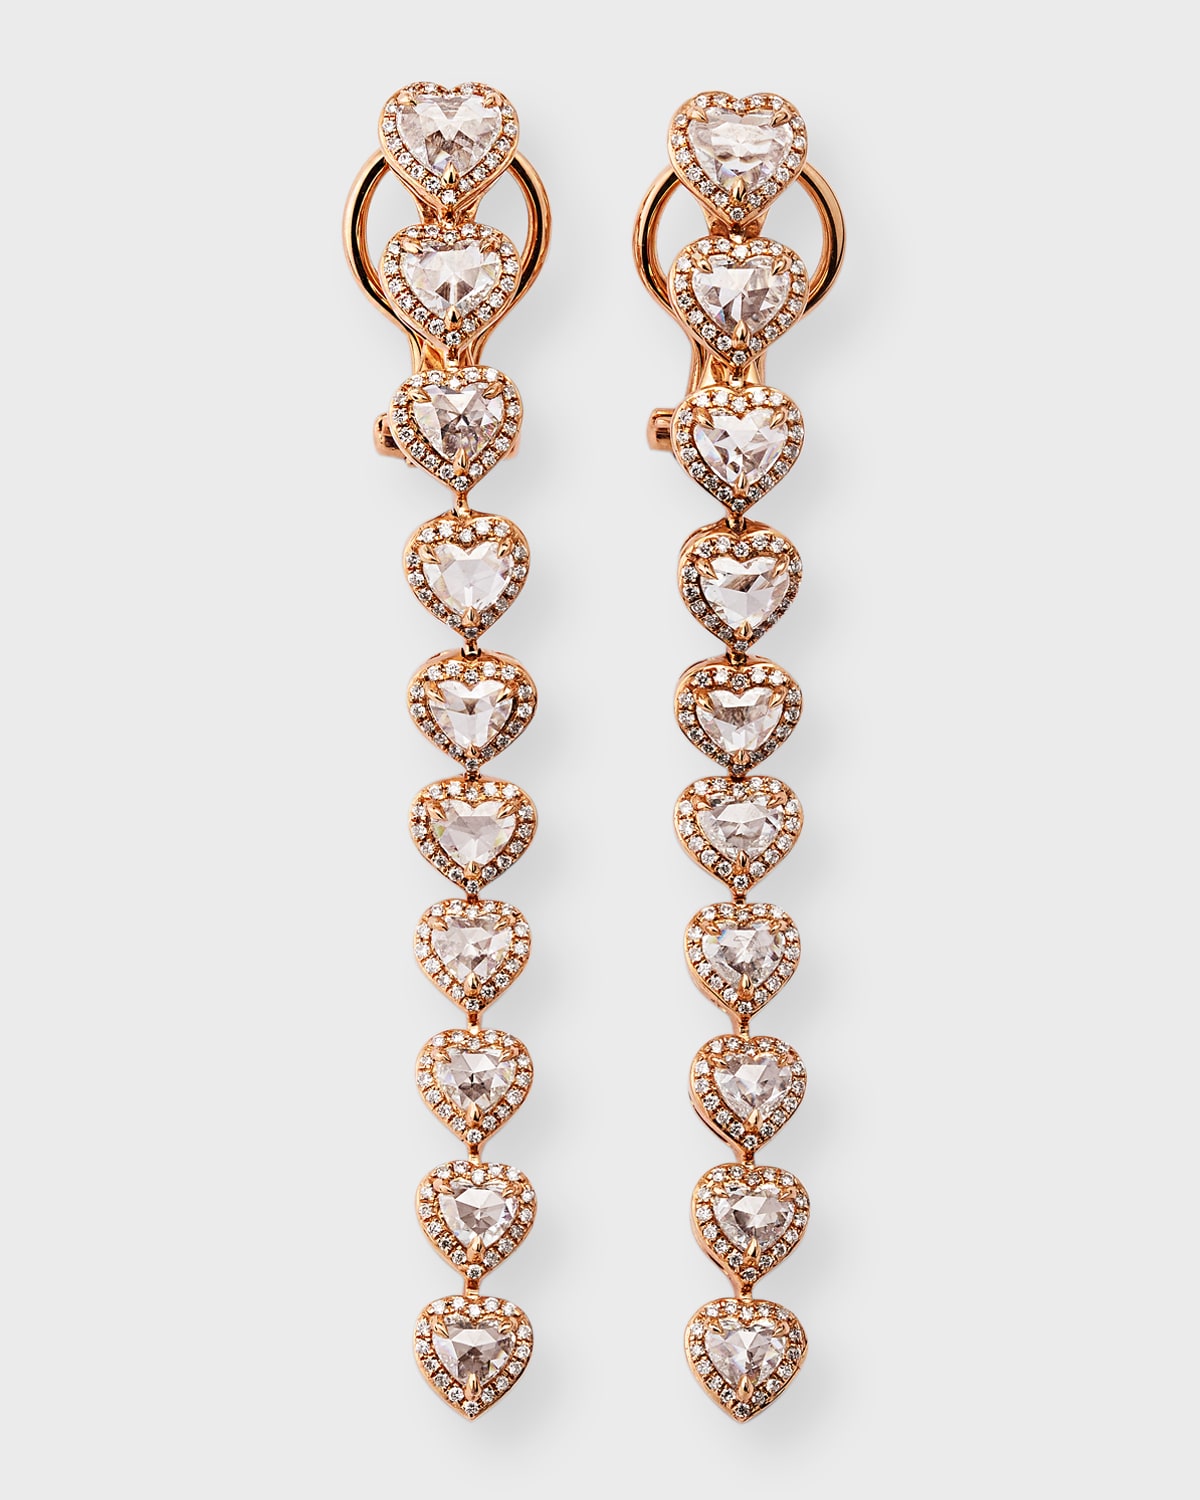 64 Facets 18k Rose Gold Heart Diamond Dangle Earrings